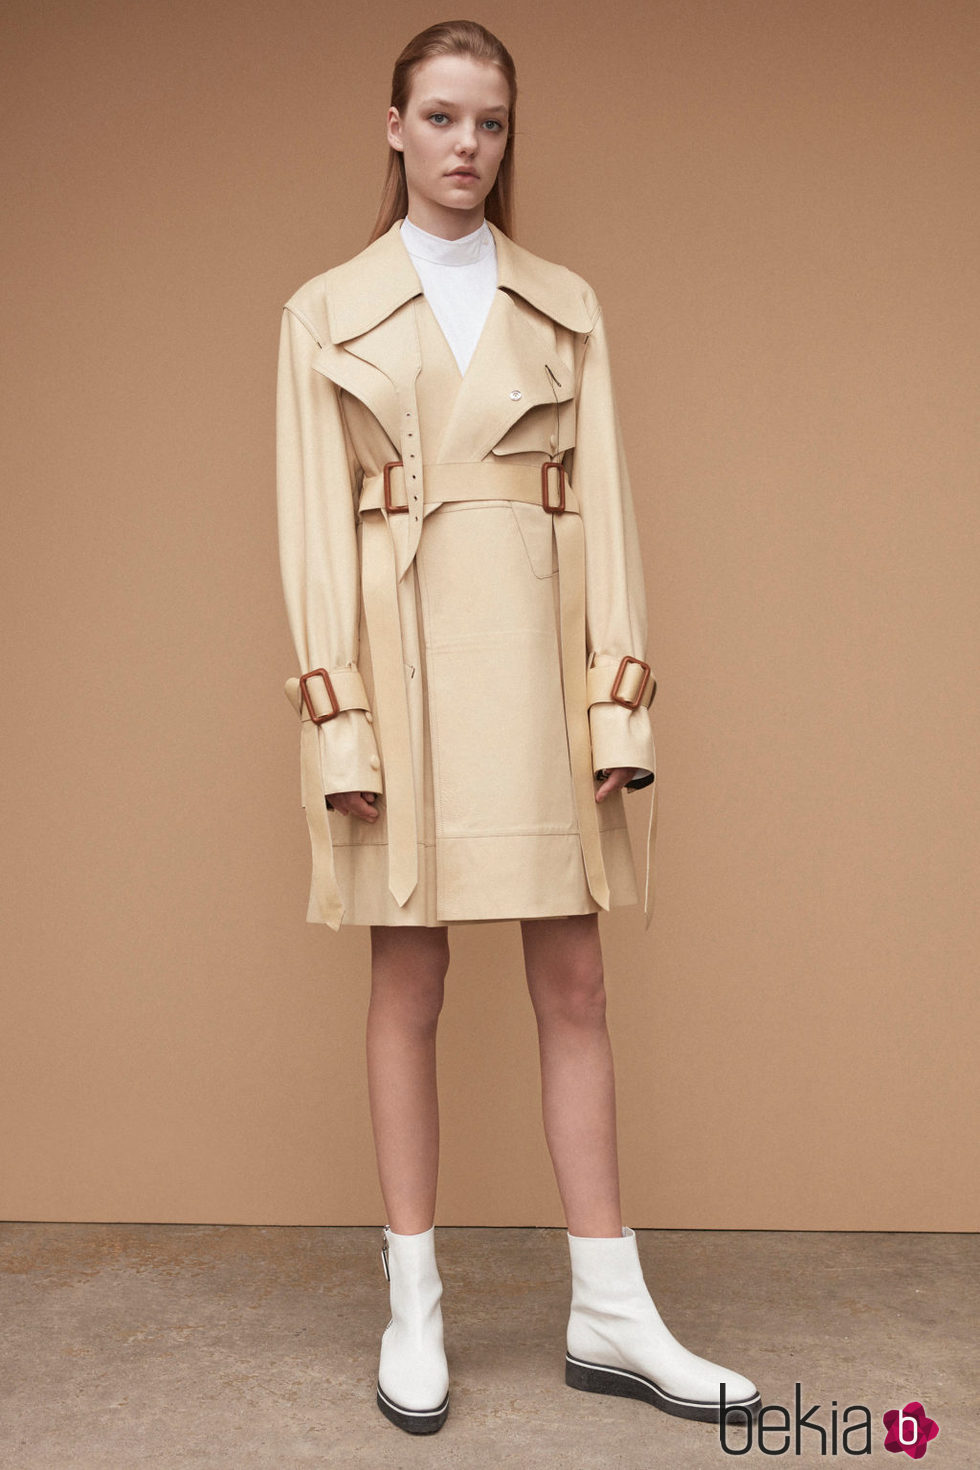 Diseño conjunto marfil para la nueva colección femenina Pre-Spring 2017 de Calvin Klein